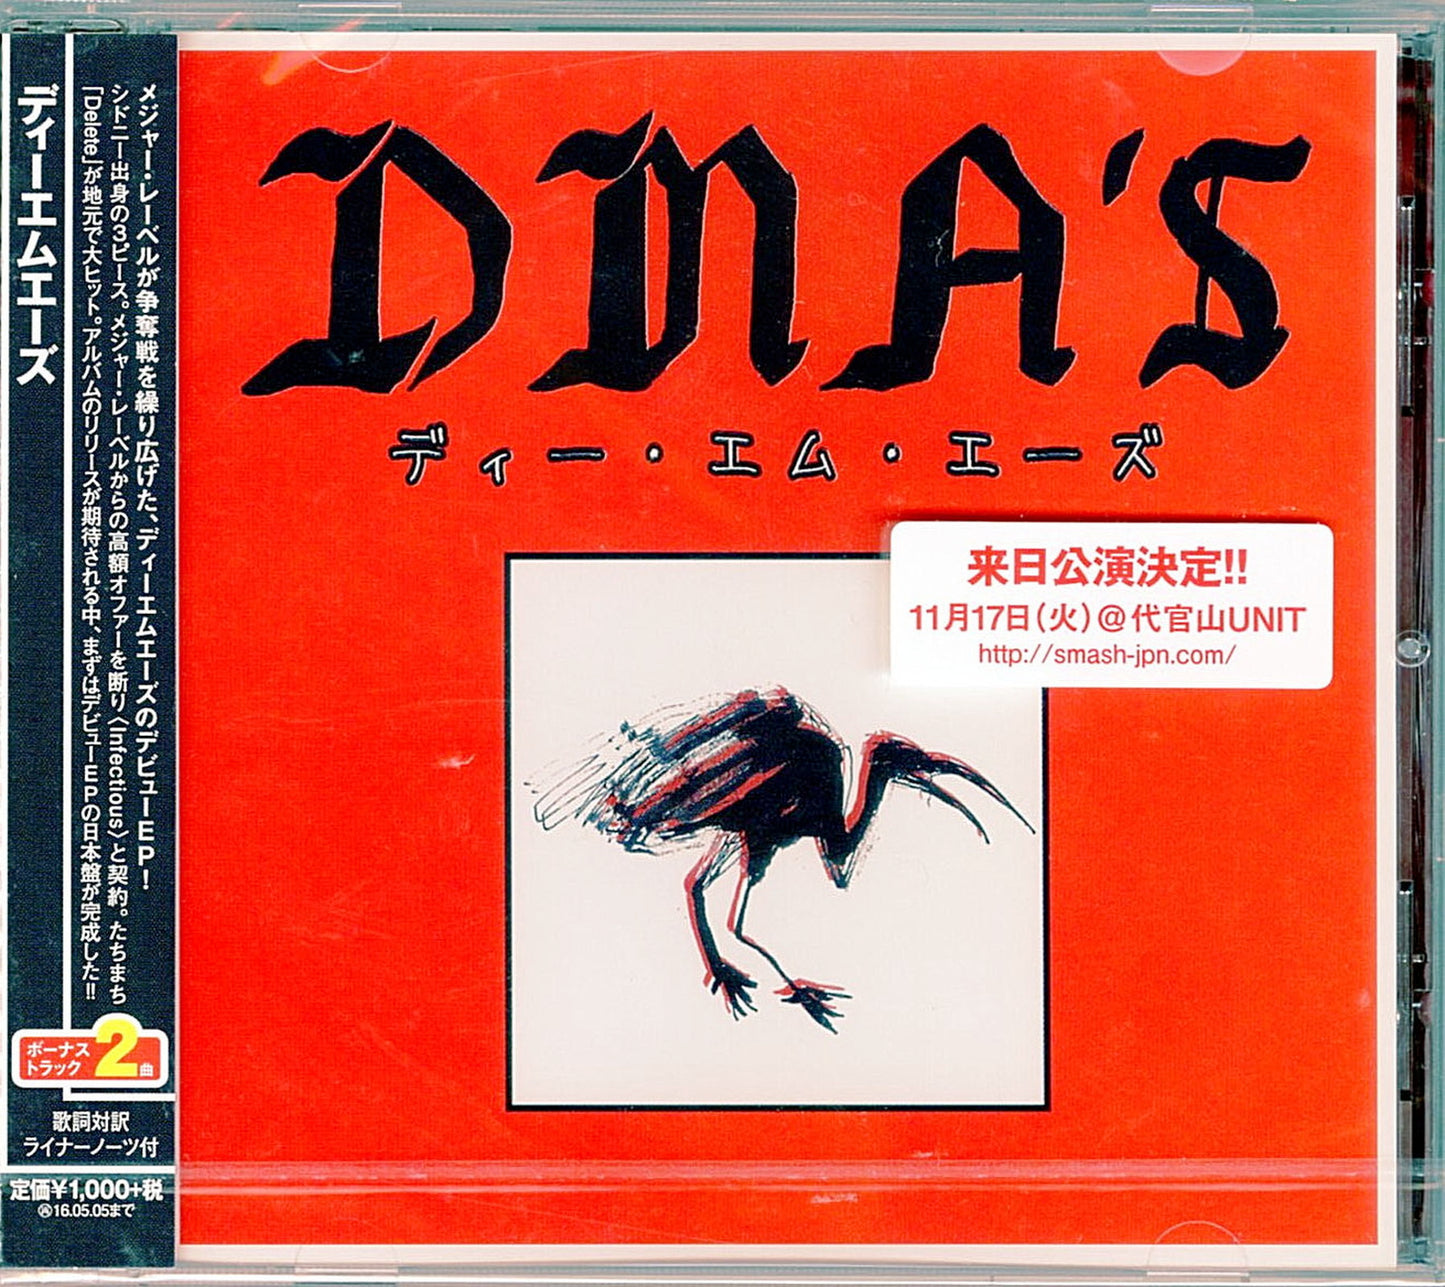 Dma'S - Dma'S - Japan  CD Bonus Track